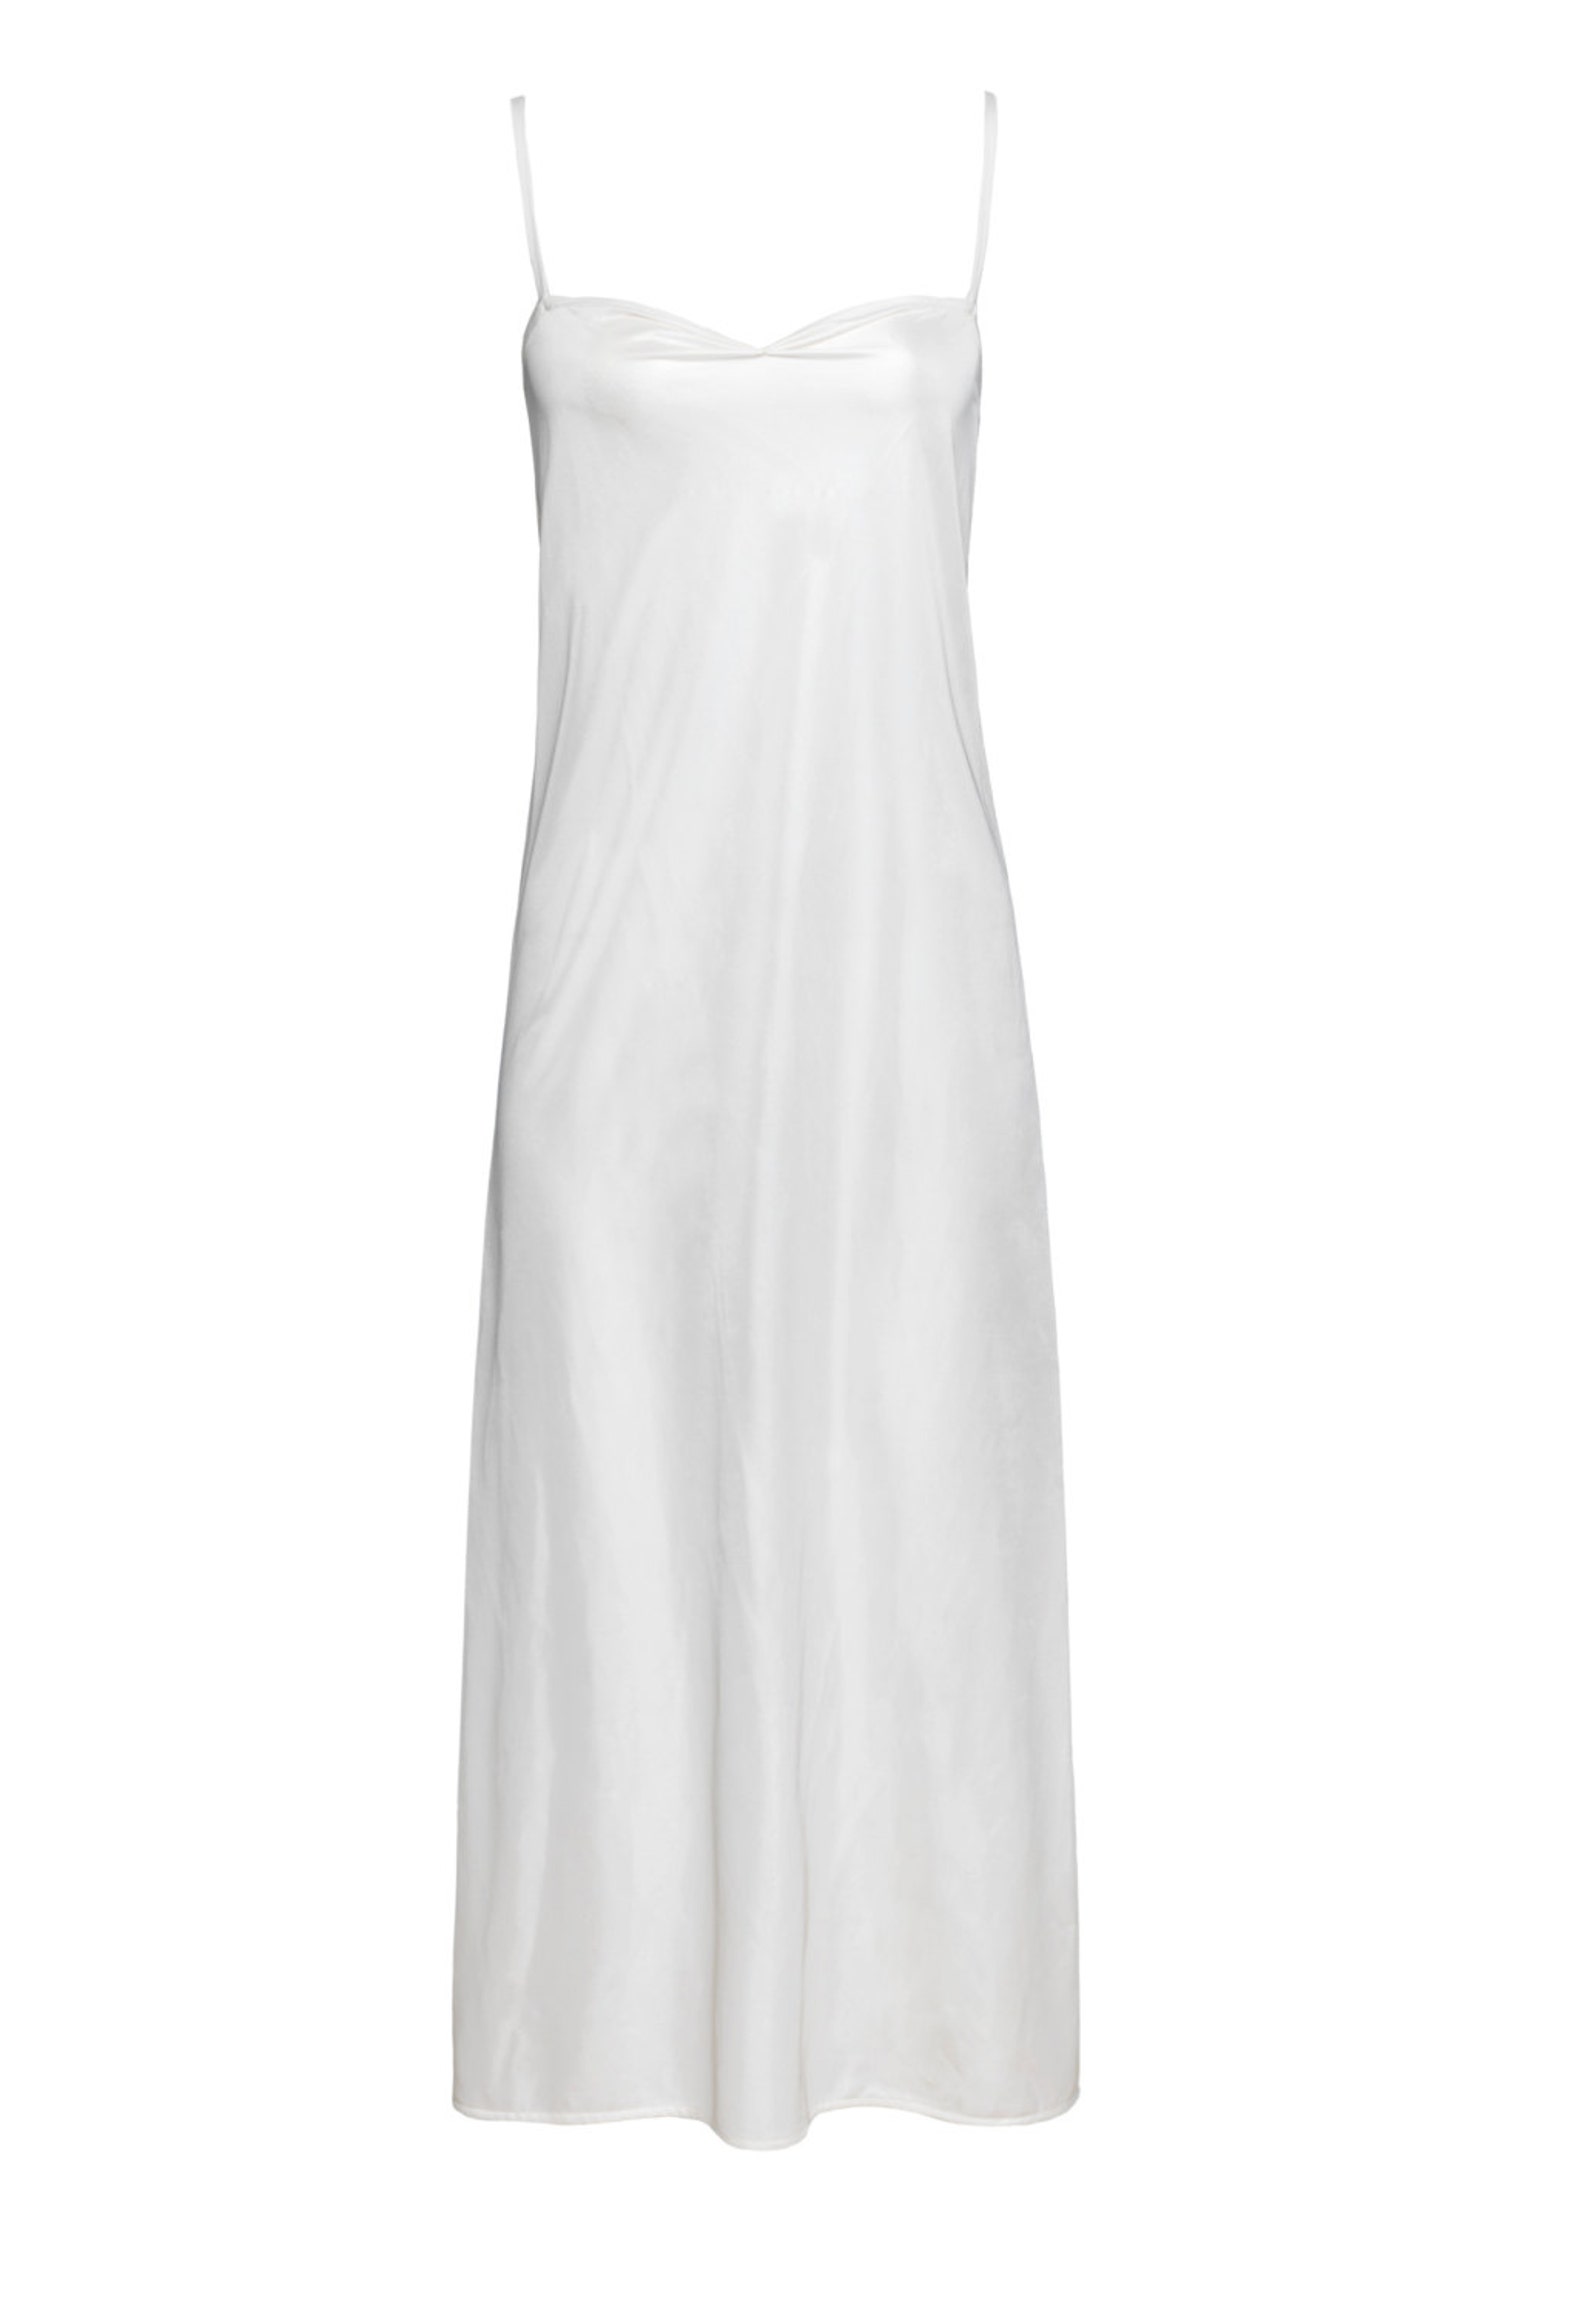 White maxi slip dress / Long white chemise /long bridal slip / | Etsy